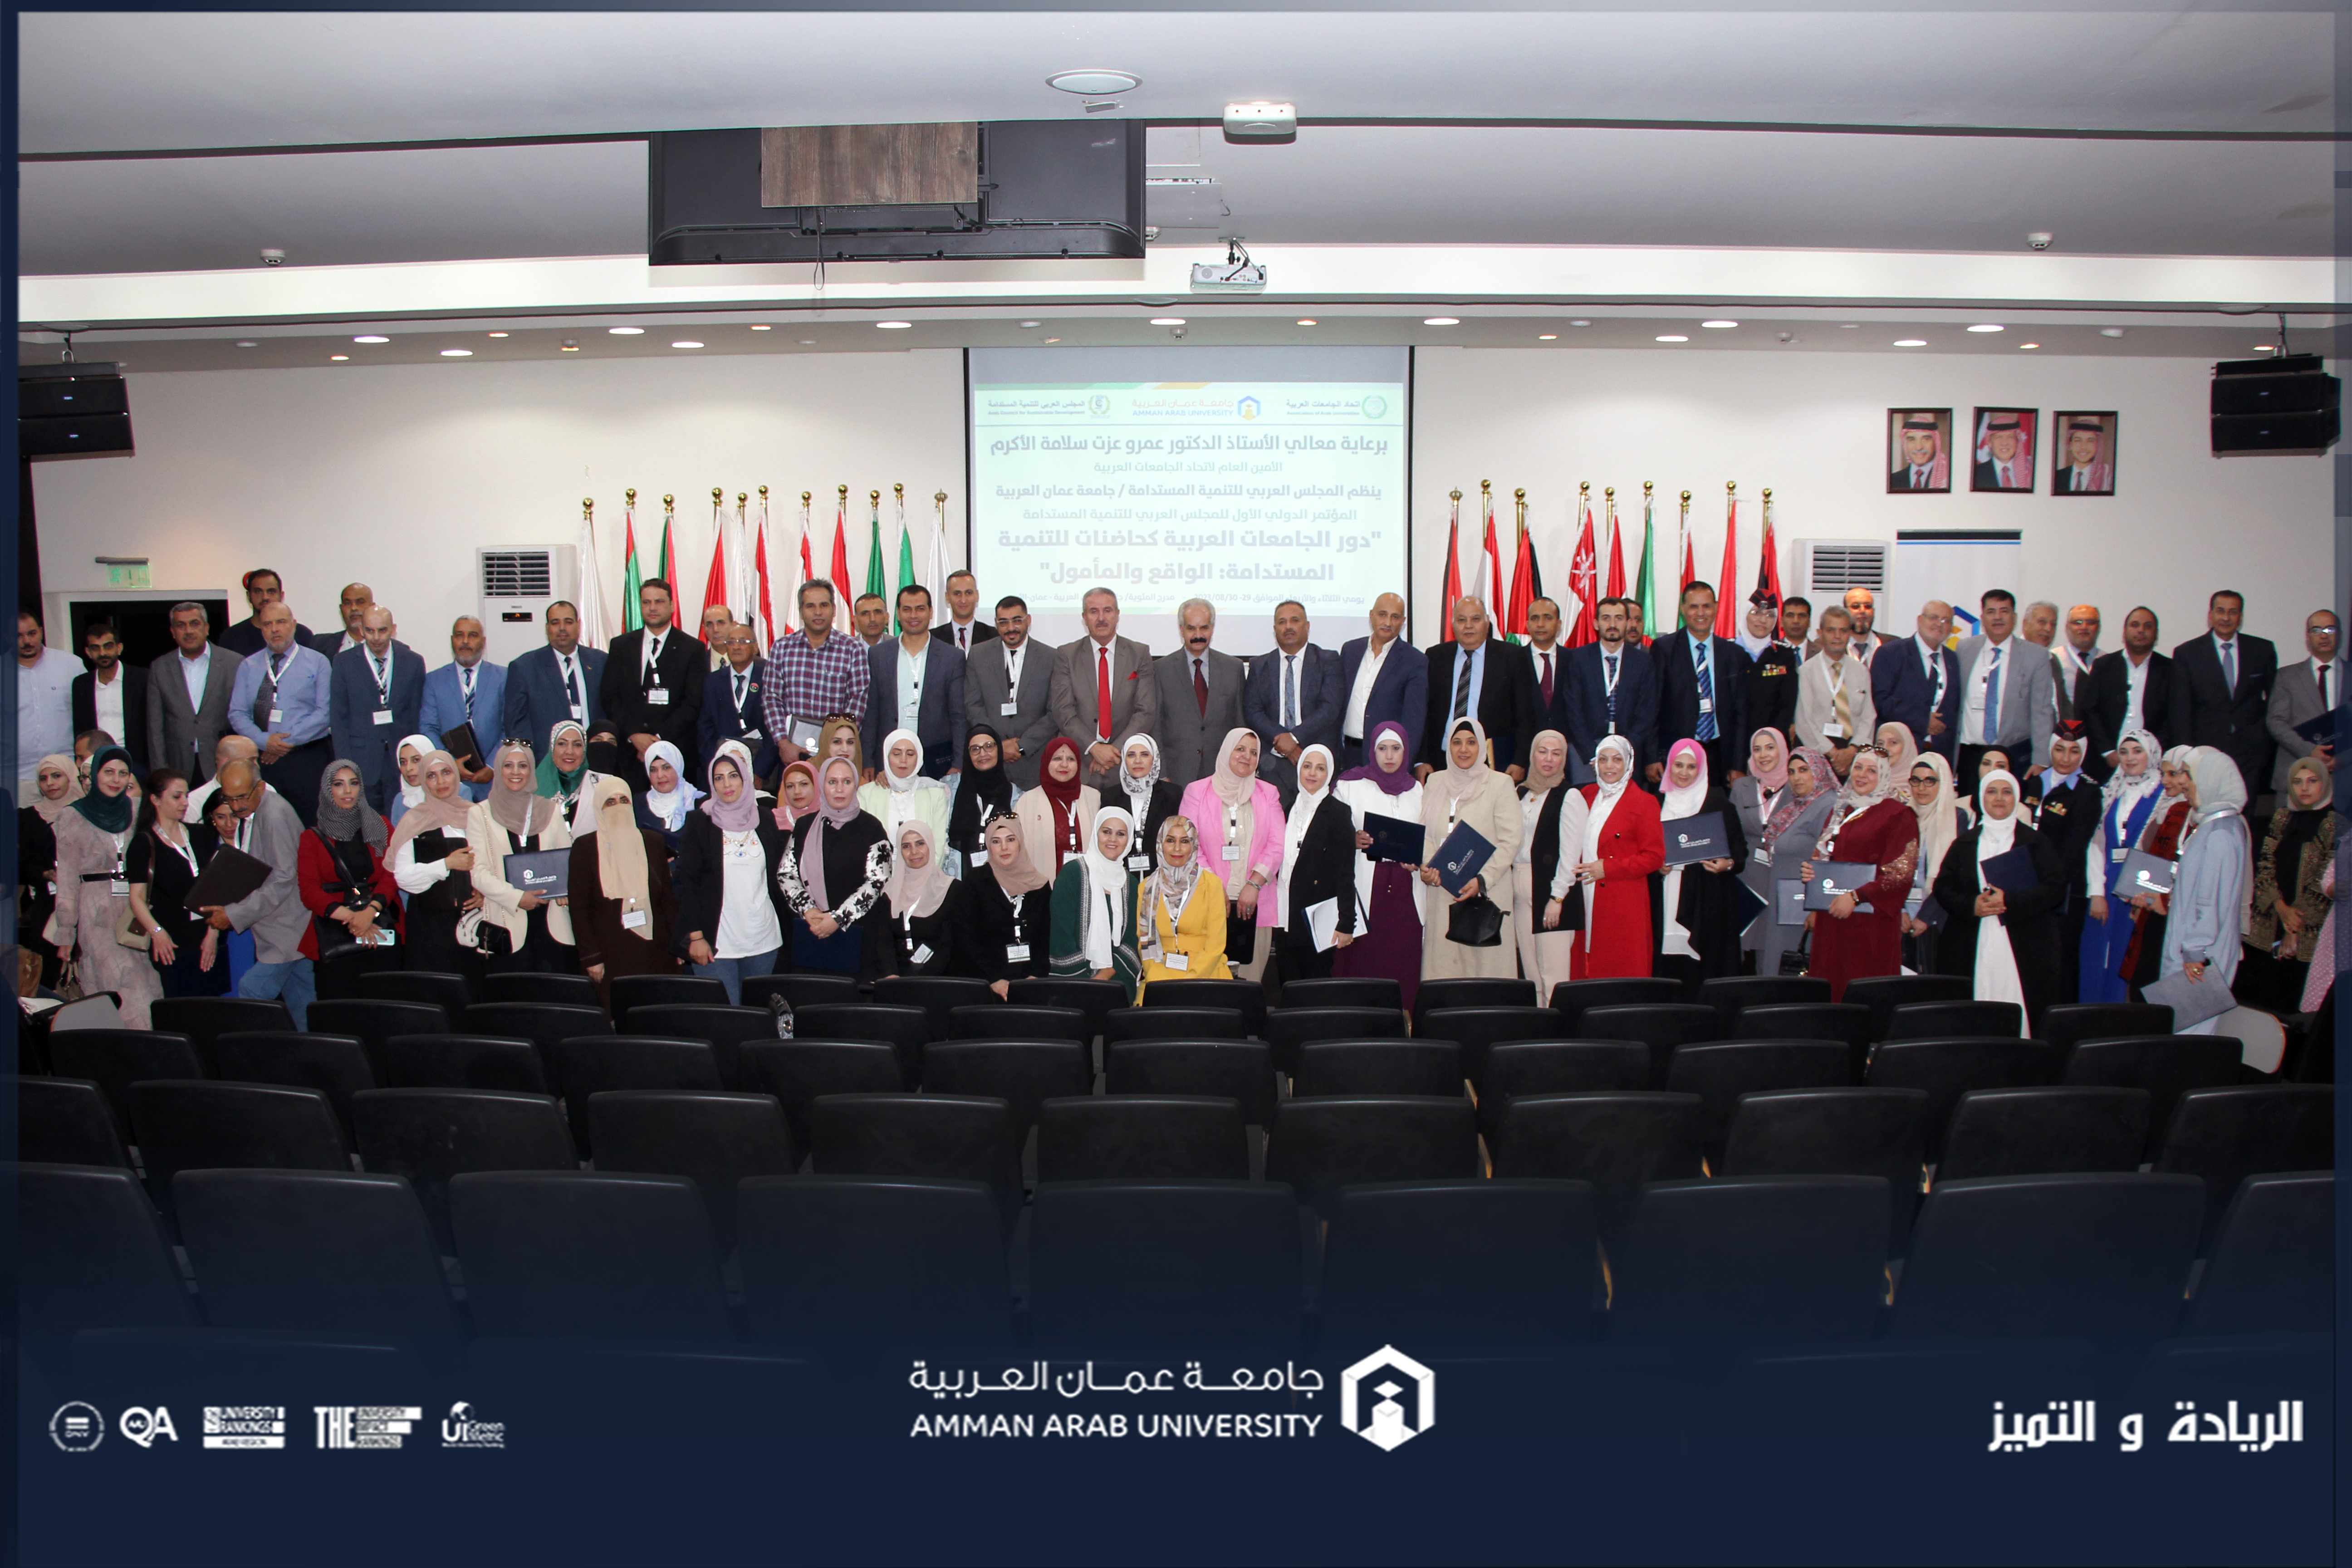 اختتام فعاليات المؤتمر الدولي الأول للمجلس العربي للتنمية المستدامة في "عمان العربية"